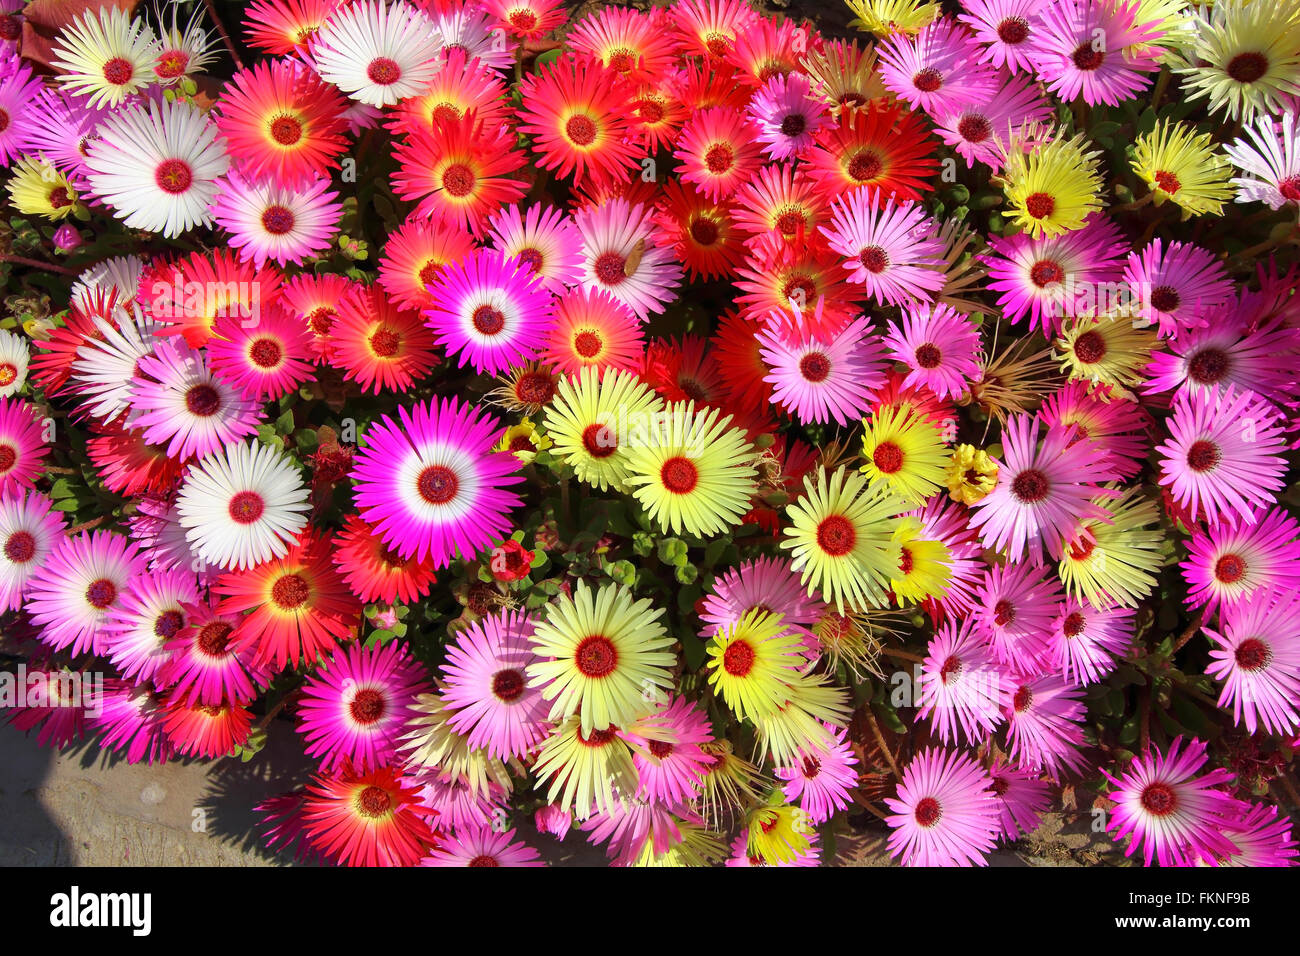 Schöne Blumen im Hintergrund rosa, Zitrone, Orange, weiß und rot Mesembryanthemum oder Livingstone Gänseblümchen Pflanzen in voller Blüte. Stockfoto